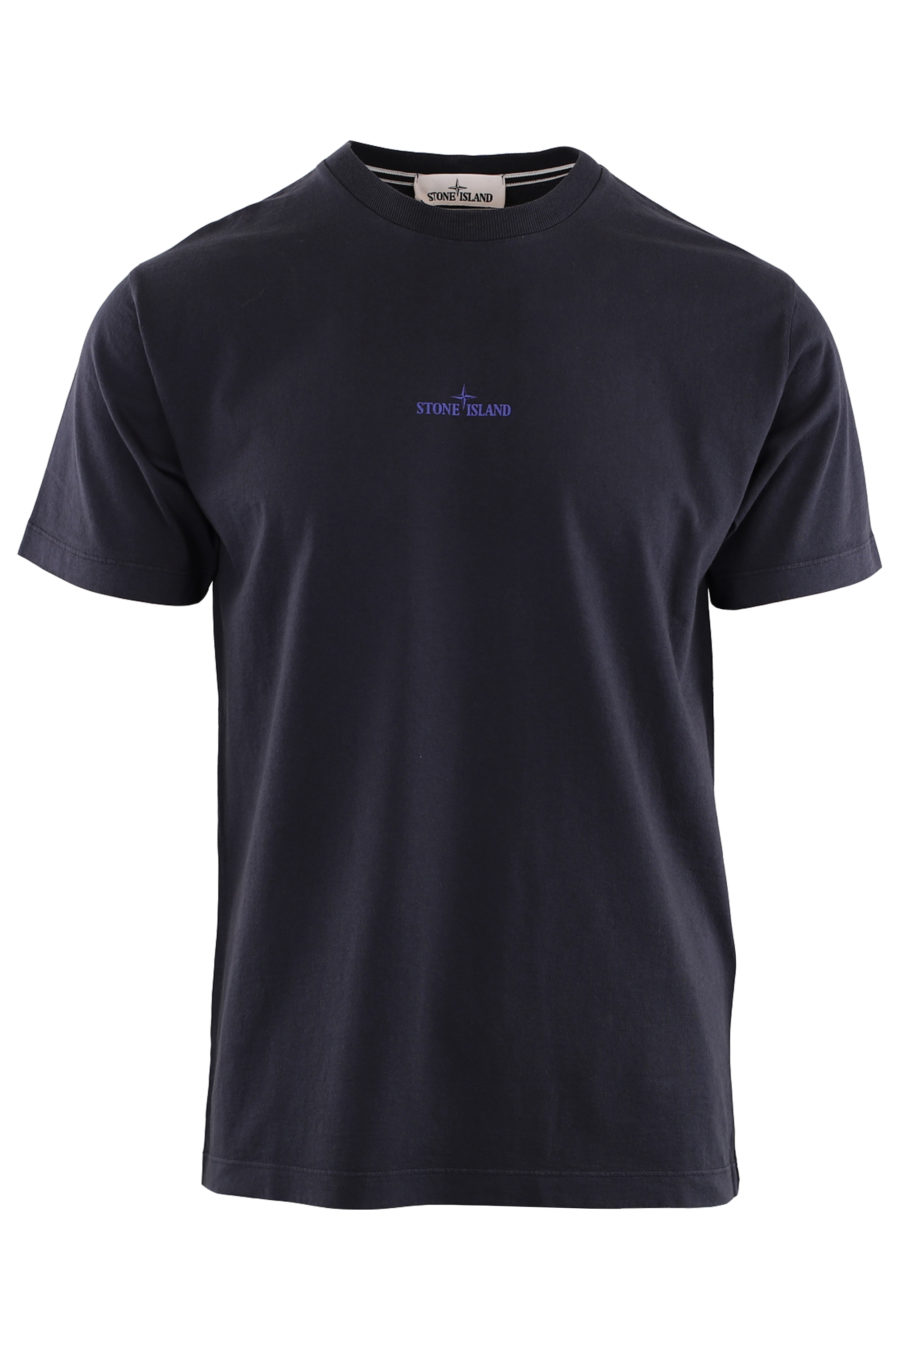 Blaues T-Shirt mit gummiertem Logo auf dem Rücken - IMG 9097